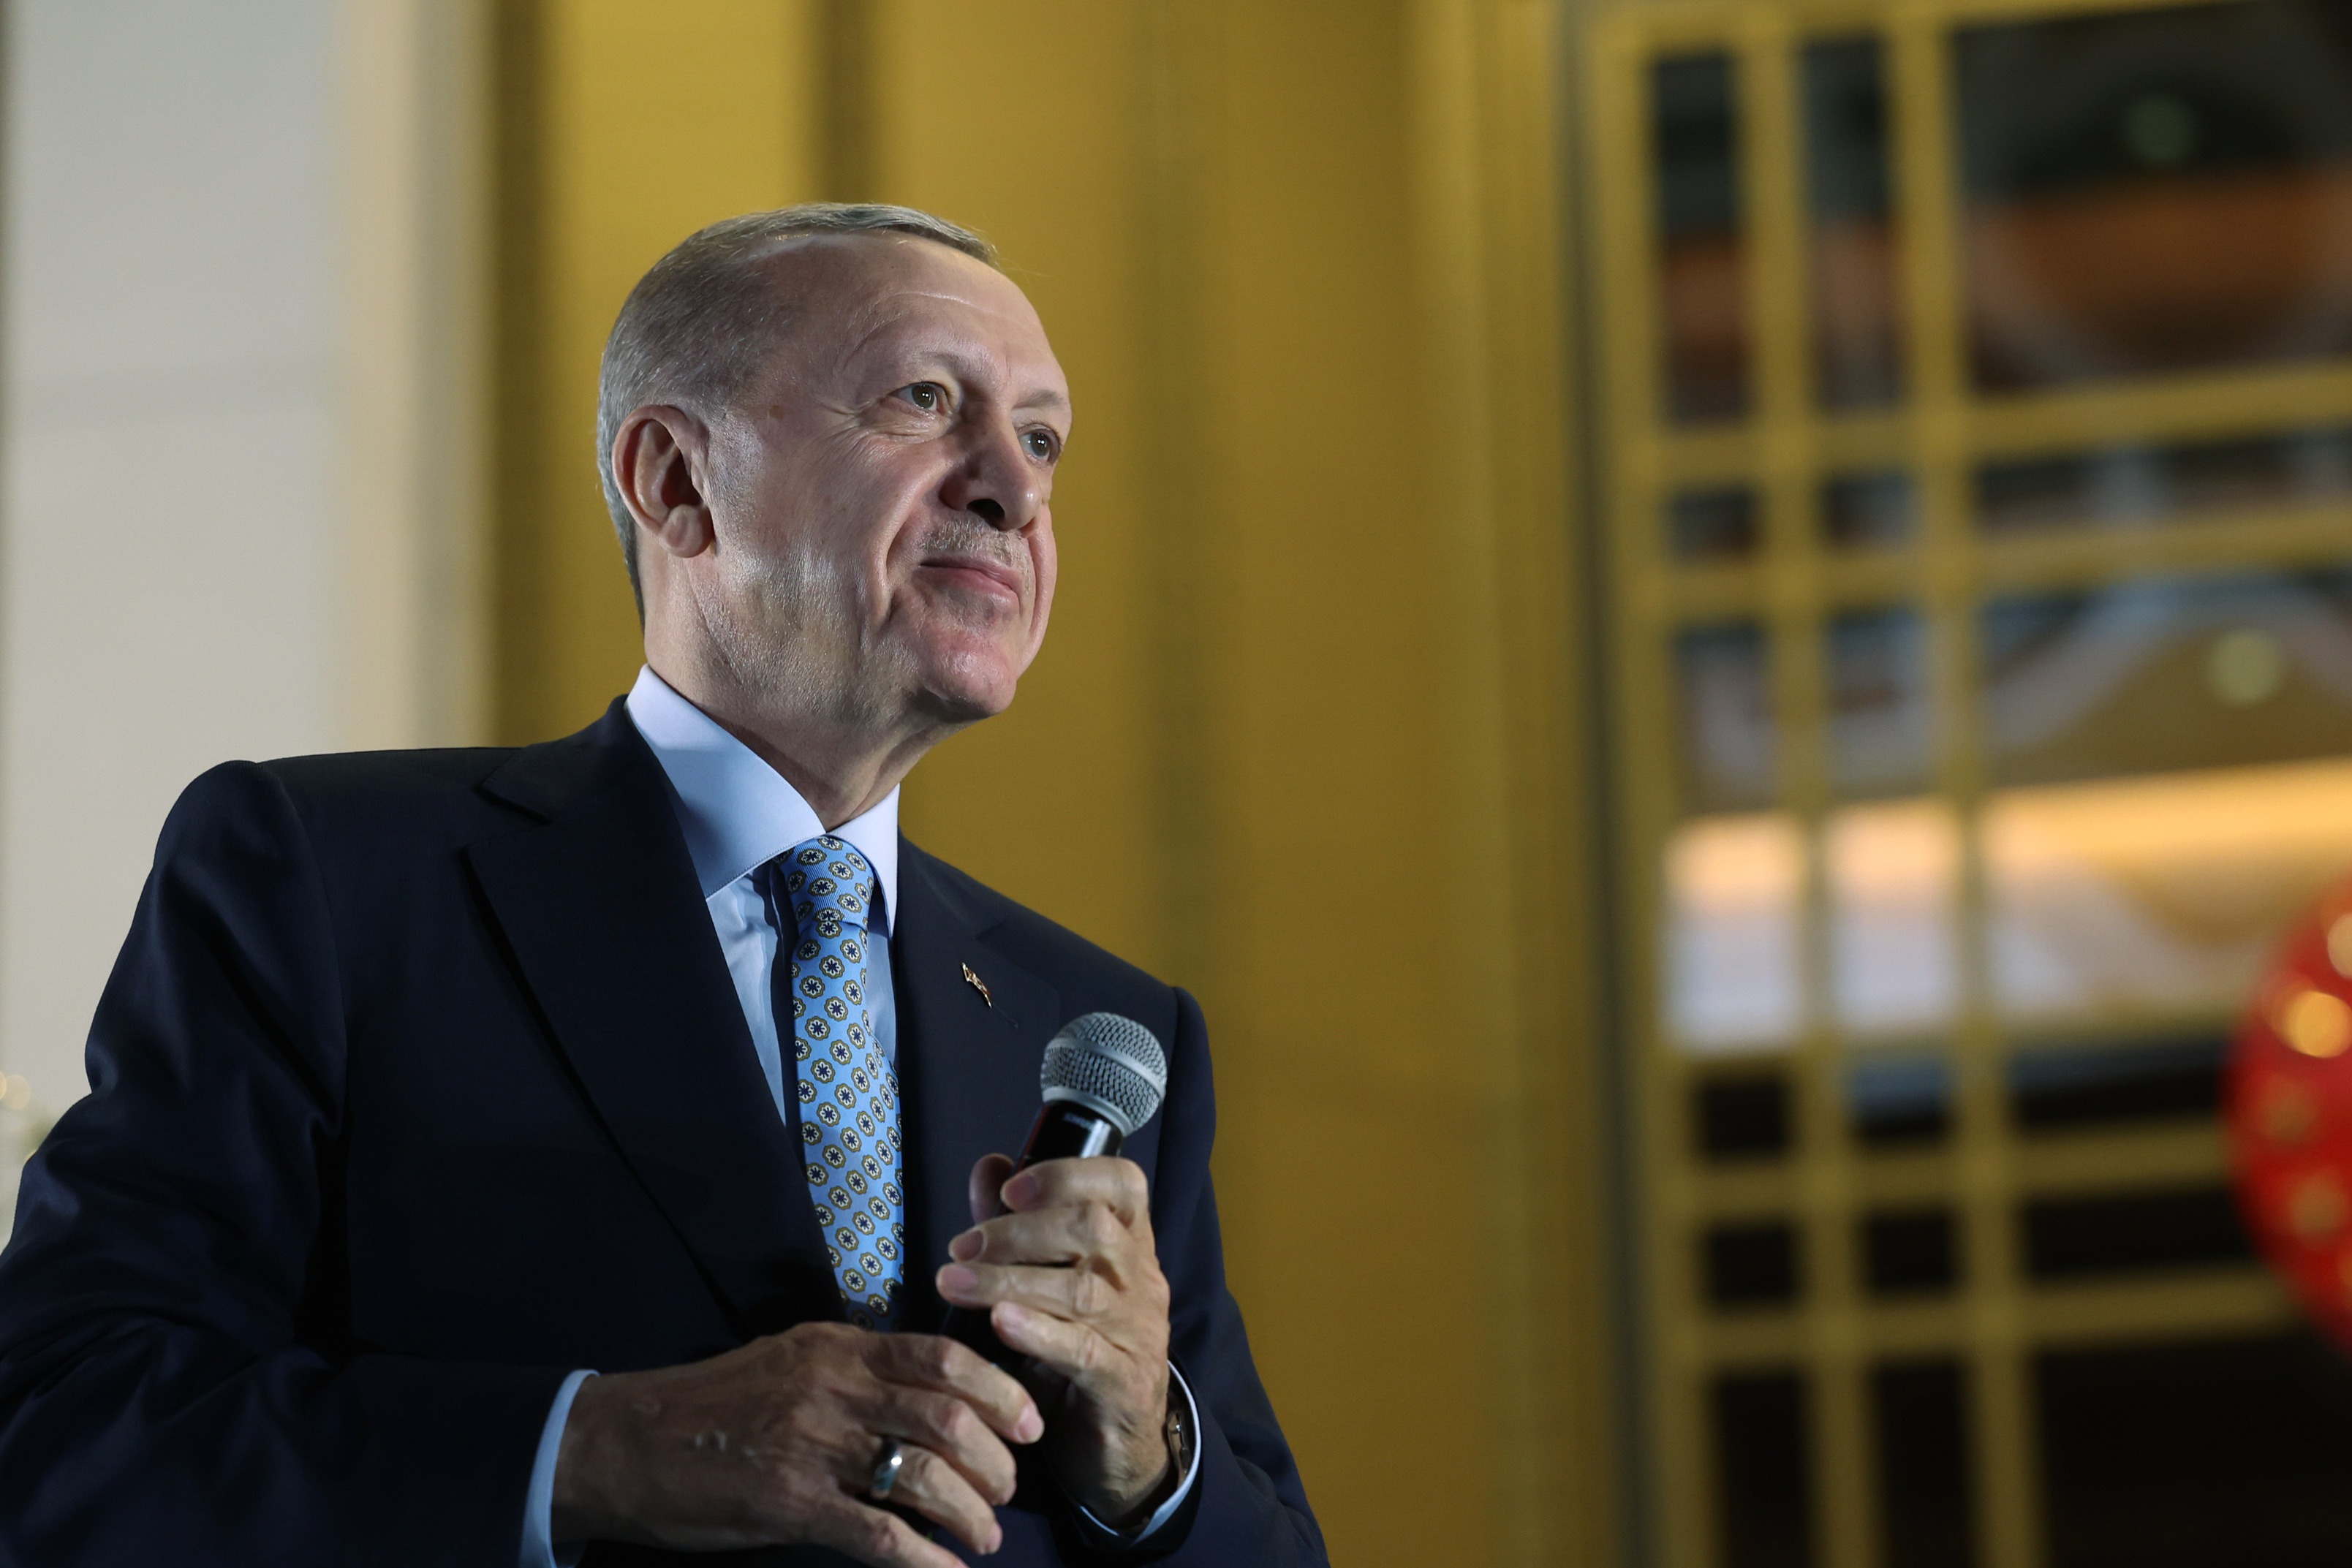 埃爾多安再度連任土耳其總統 籲民眾放下分歧為國家團結